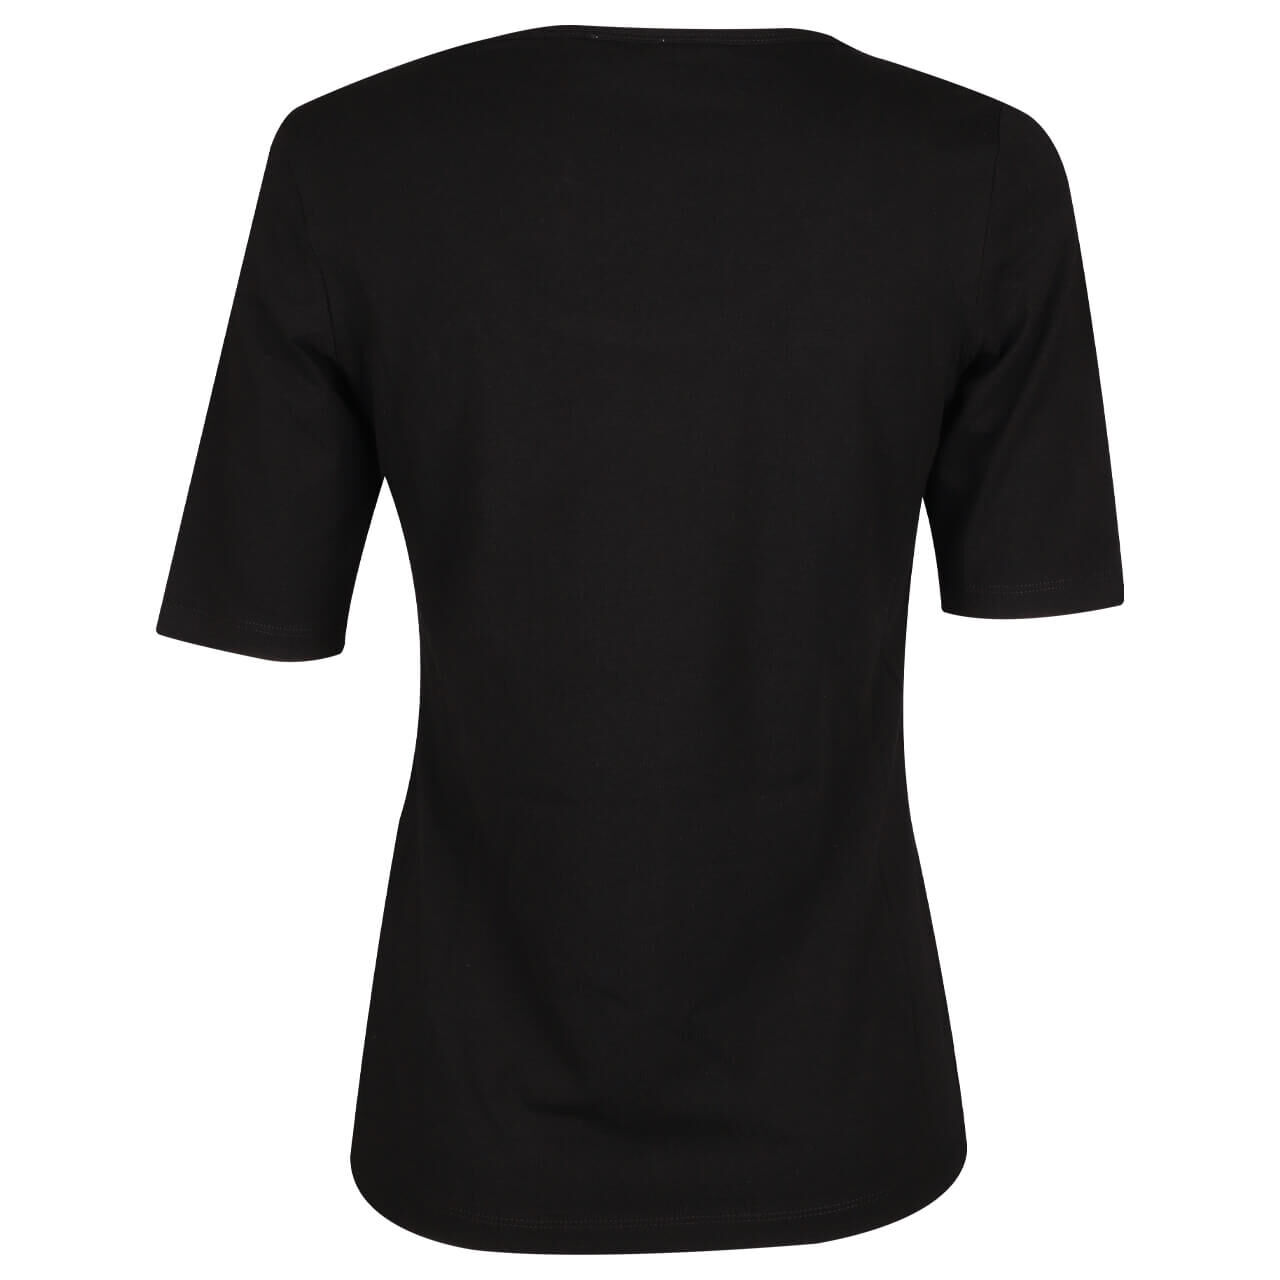 s.Oliver Damen T-Shirt black